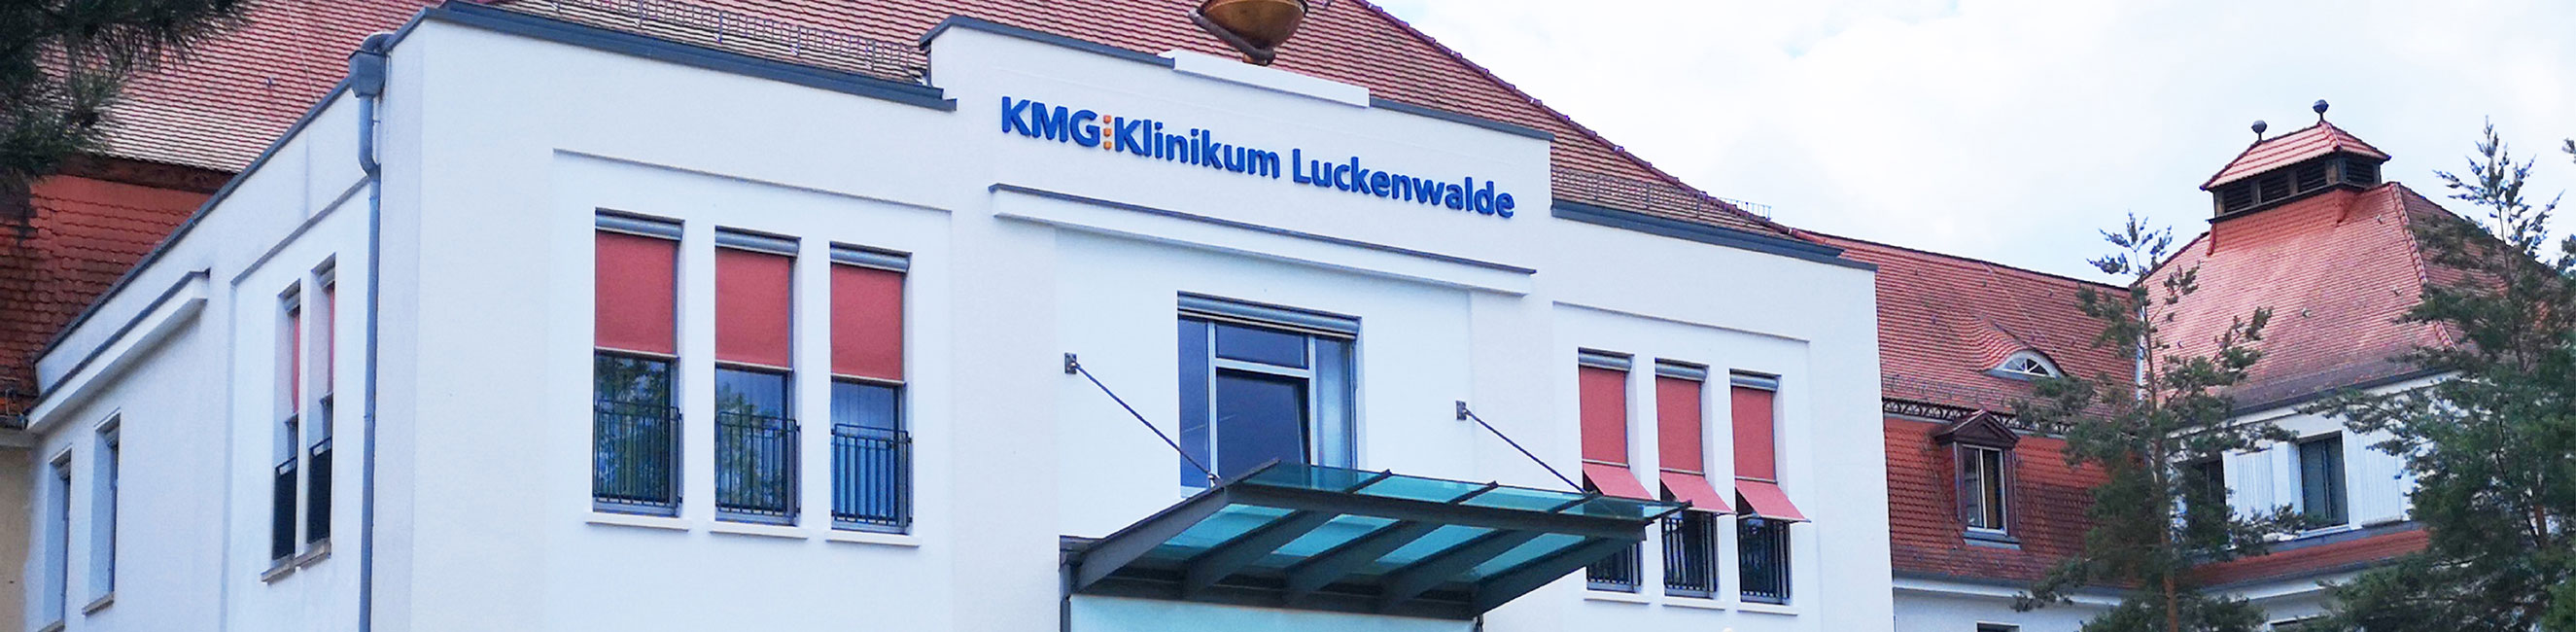 Allgemein- Viszeral- und Gefäßchirurgie KMG Klinikum Luckenwalde